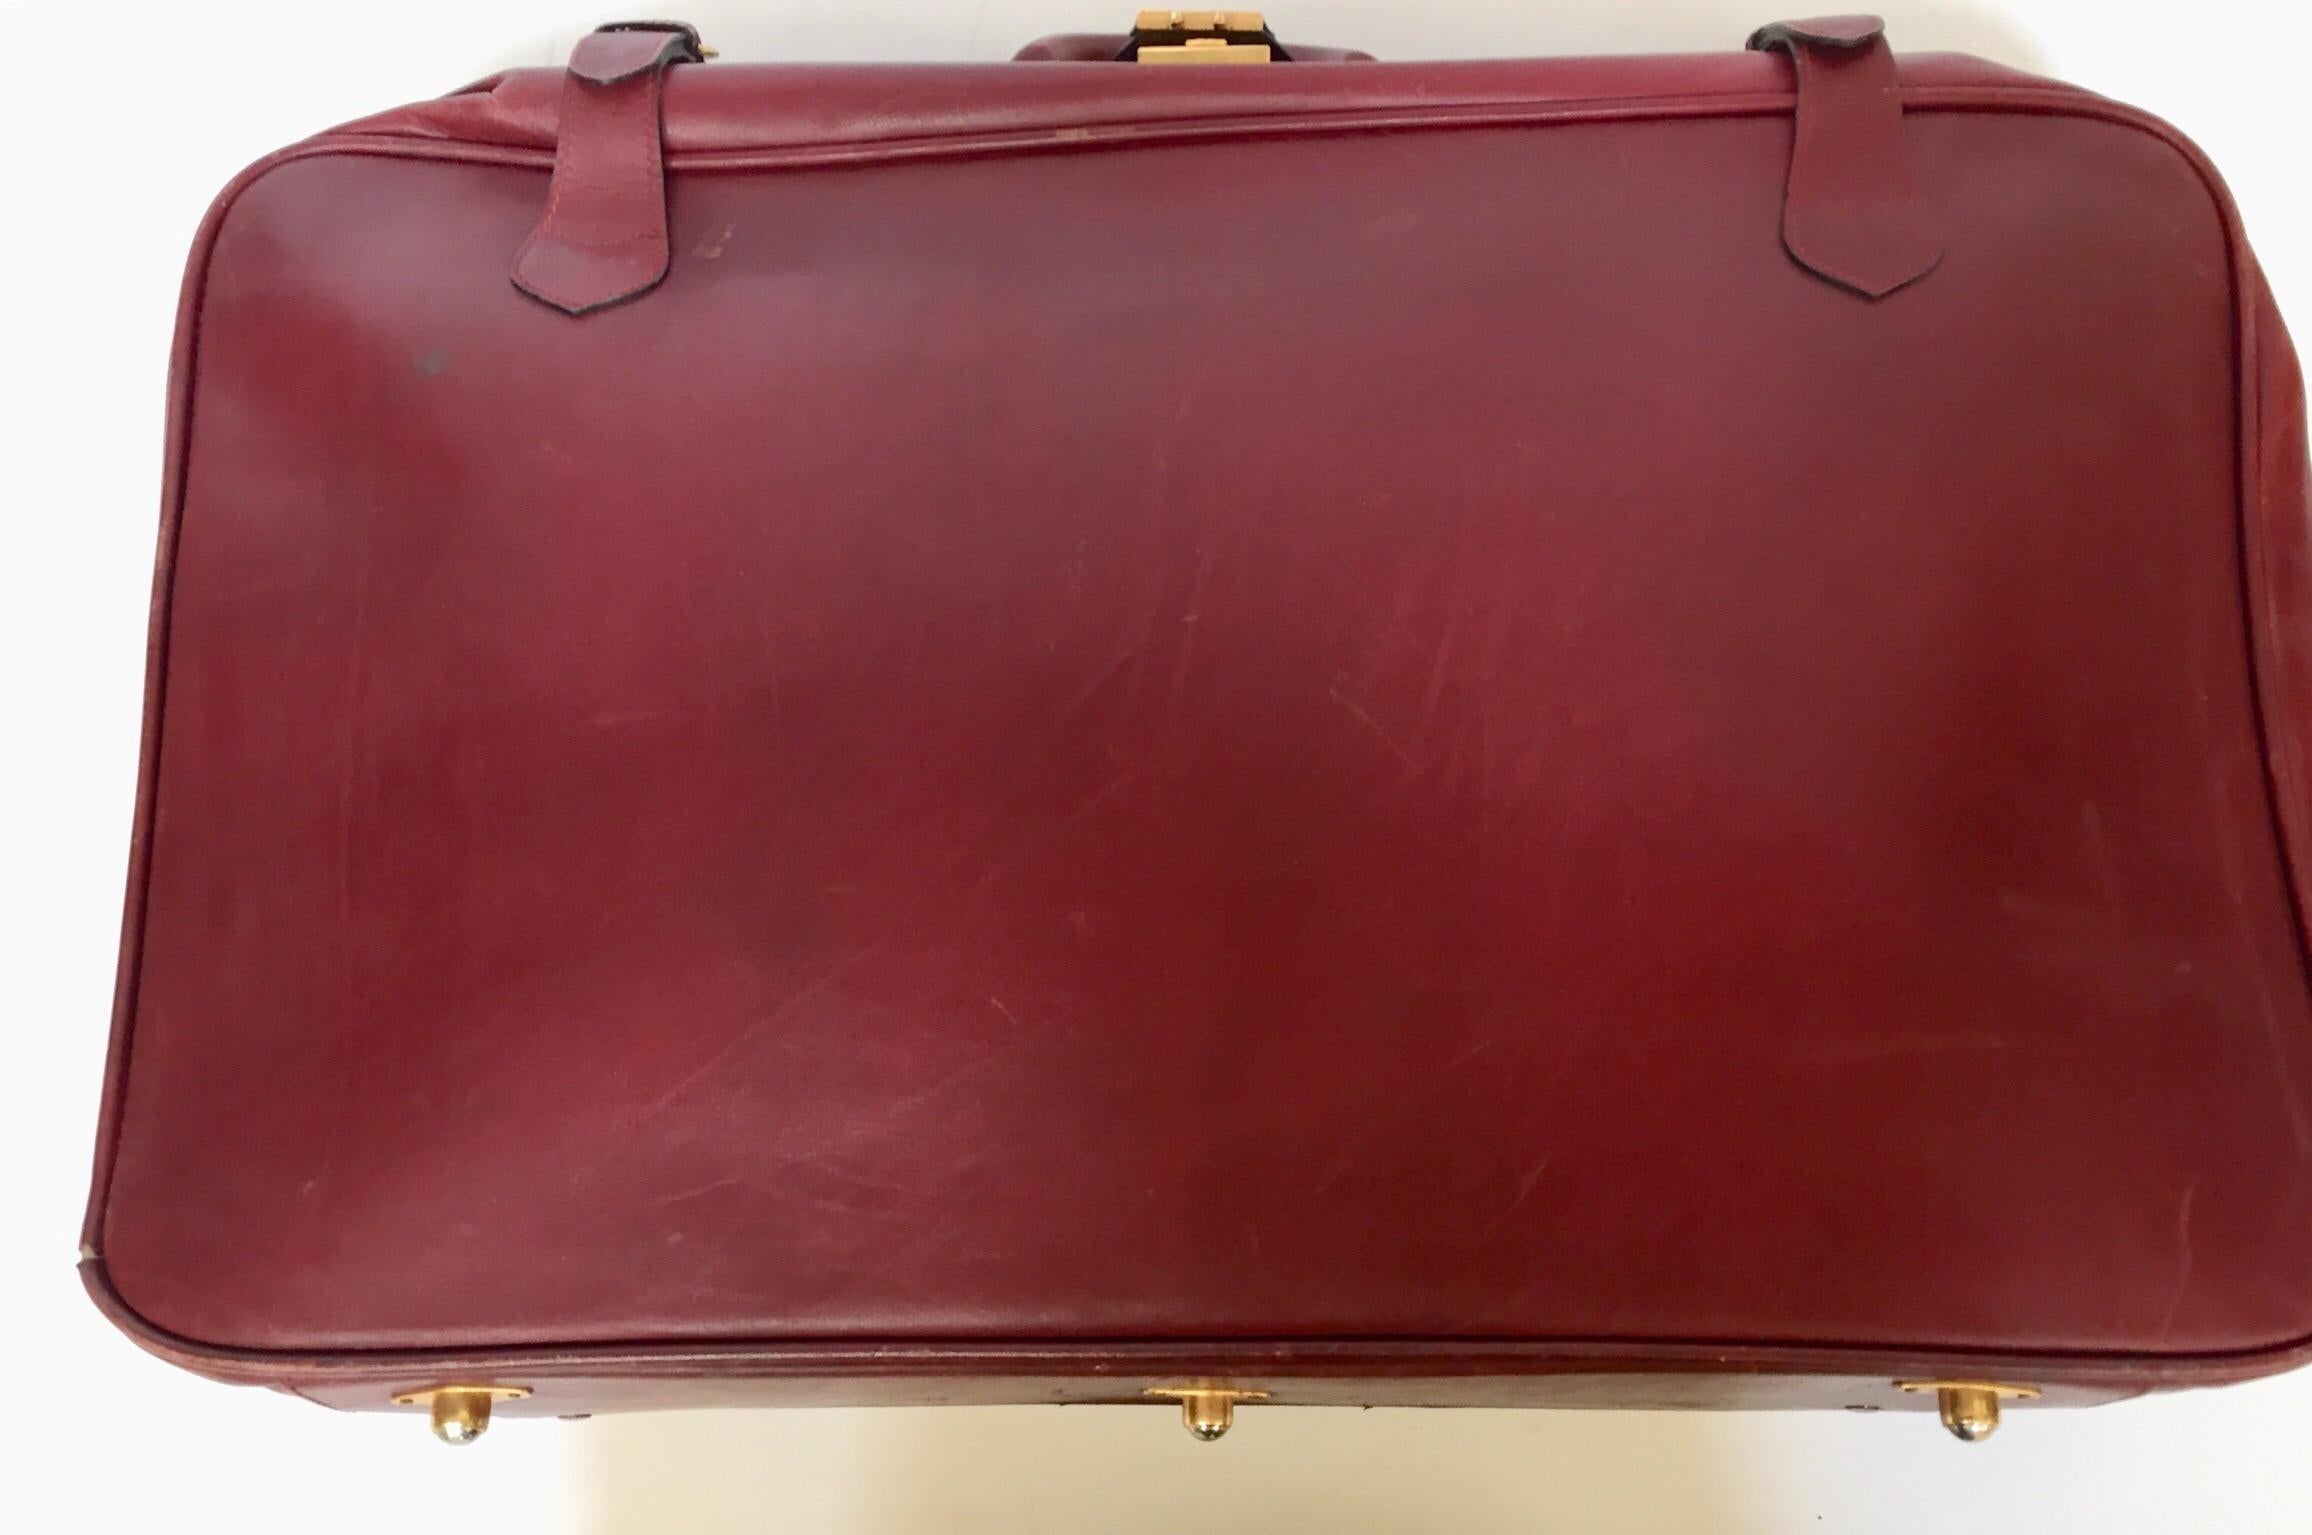 Les Must de Cartier Vintage Leather Suitcase Burgundy Bordeaux Luggage For Sale 1